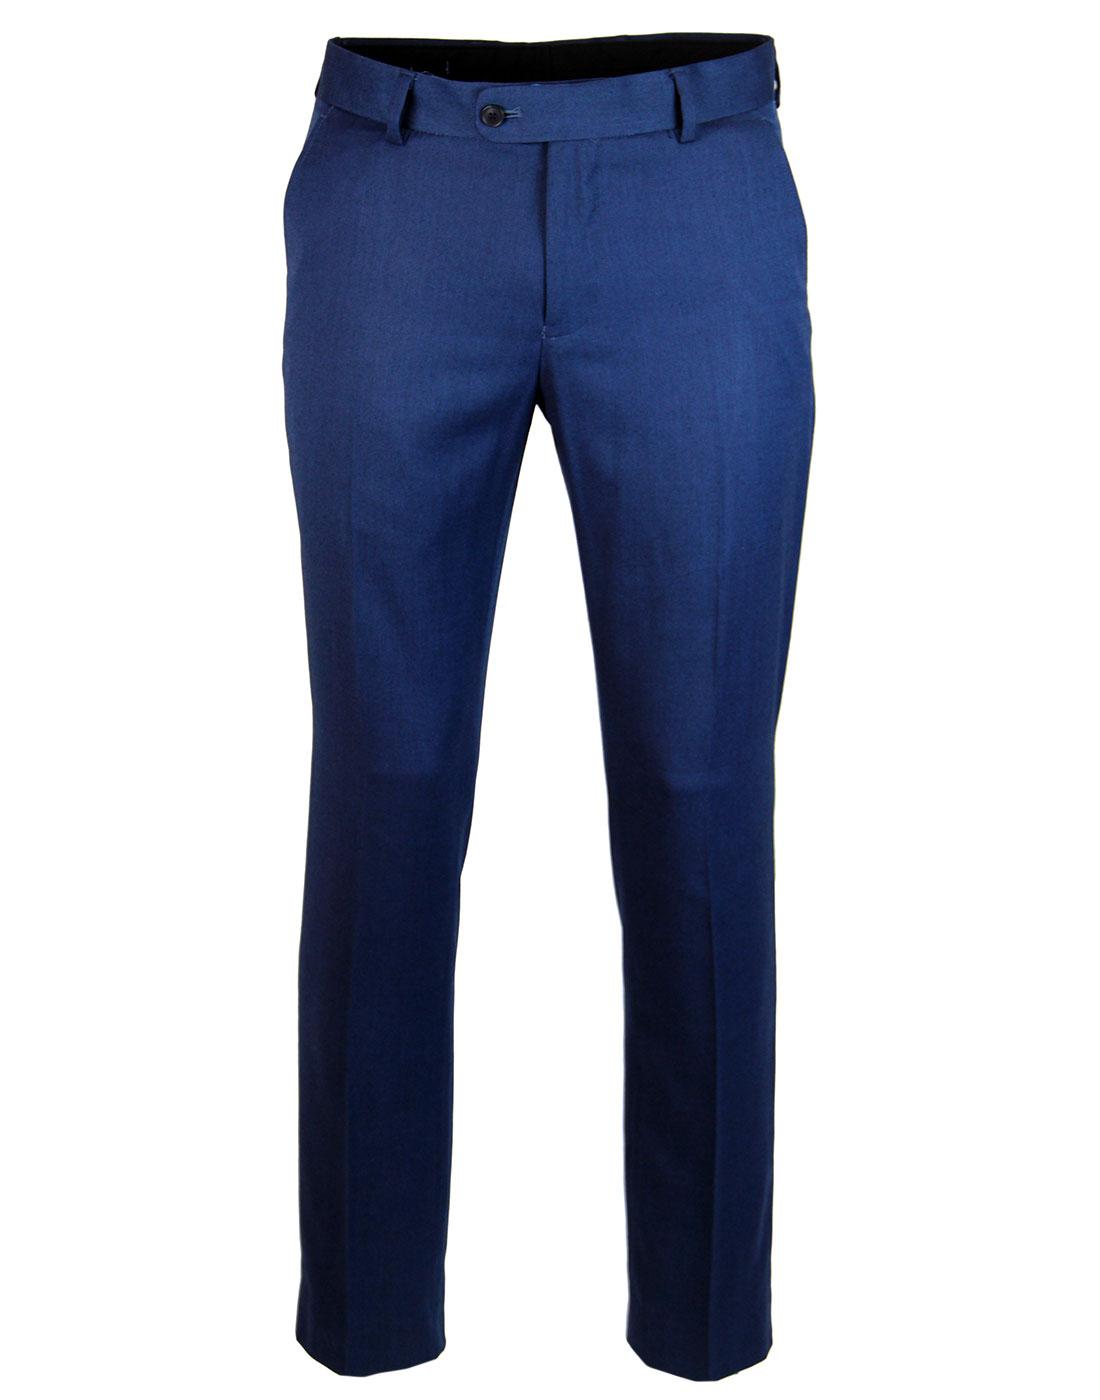 Graceland Retro Mod Slim Cut Tux Suit Trousers